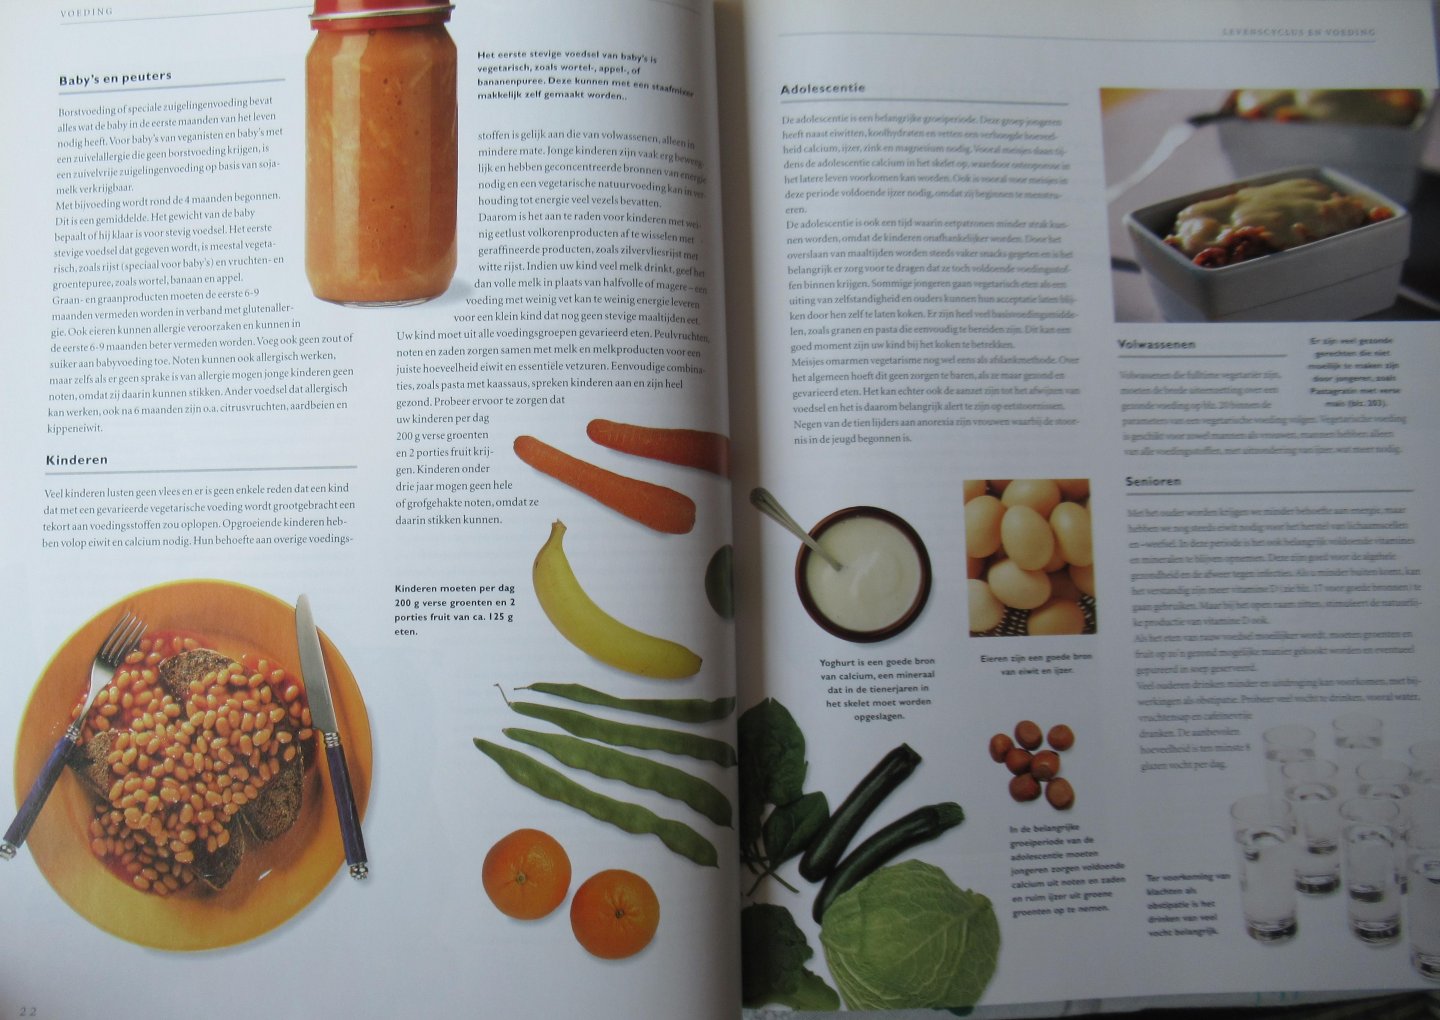 Brown, Sarah - Atrium Vegetarisch Kookboek